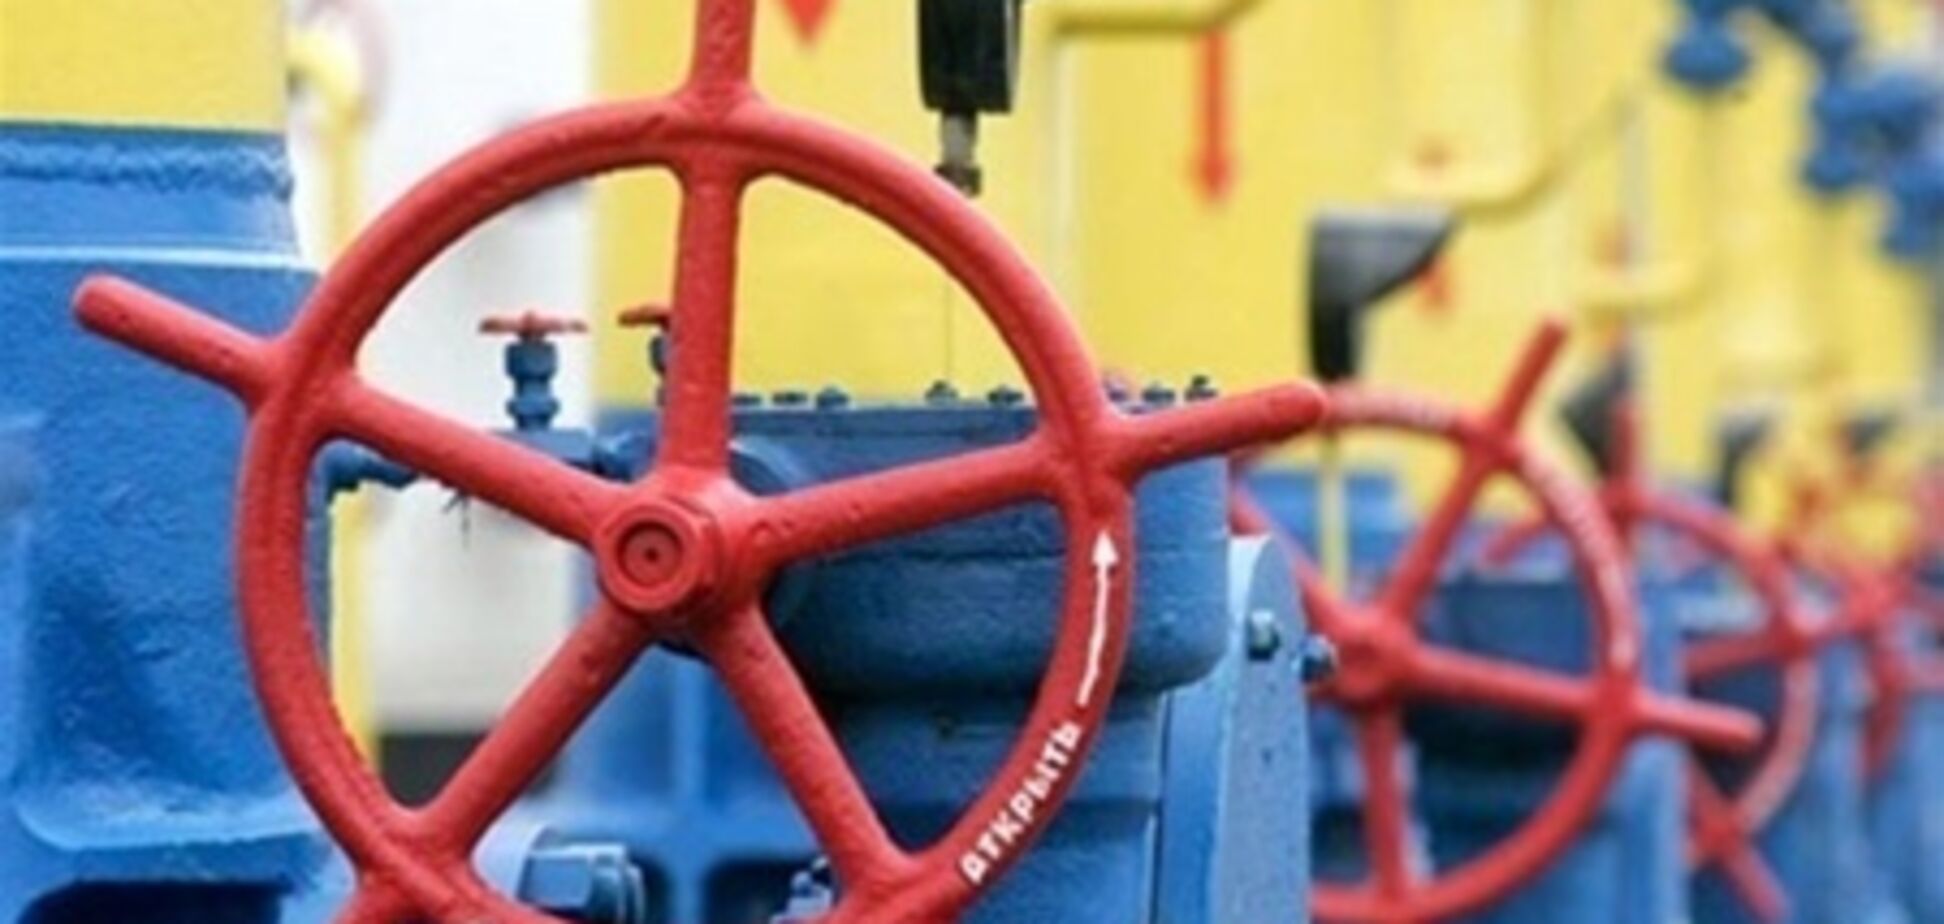 Украина на пороге газовой революции - Ставицкий